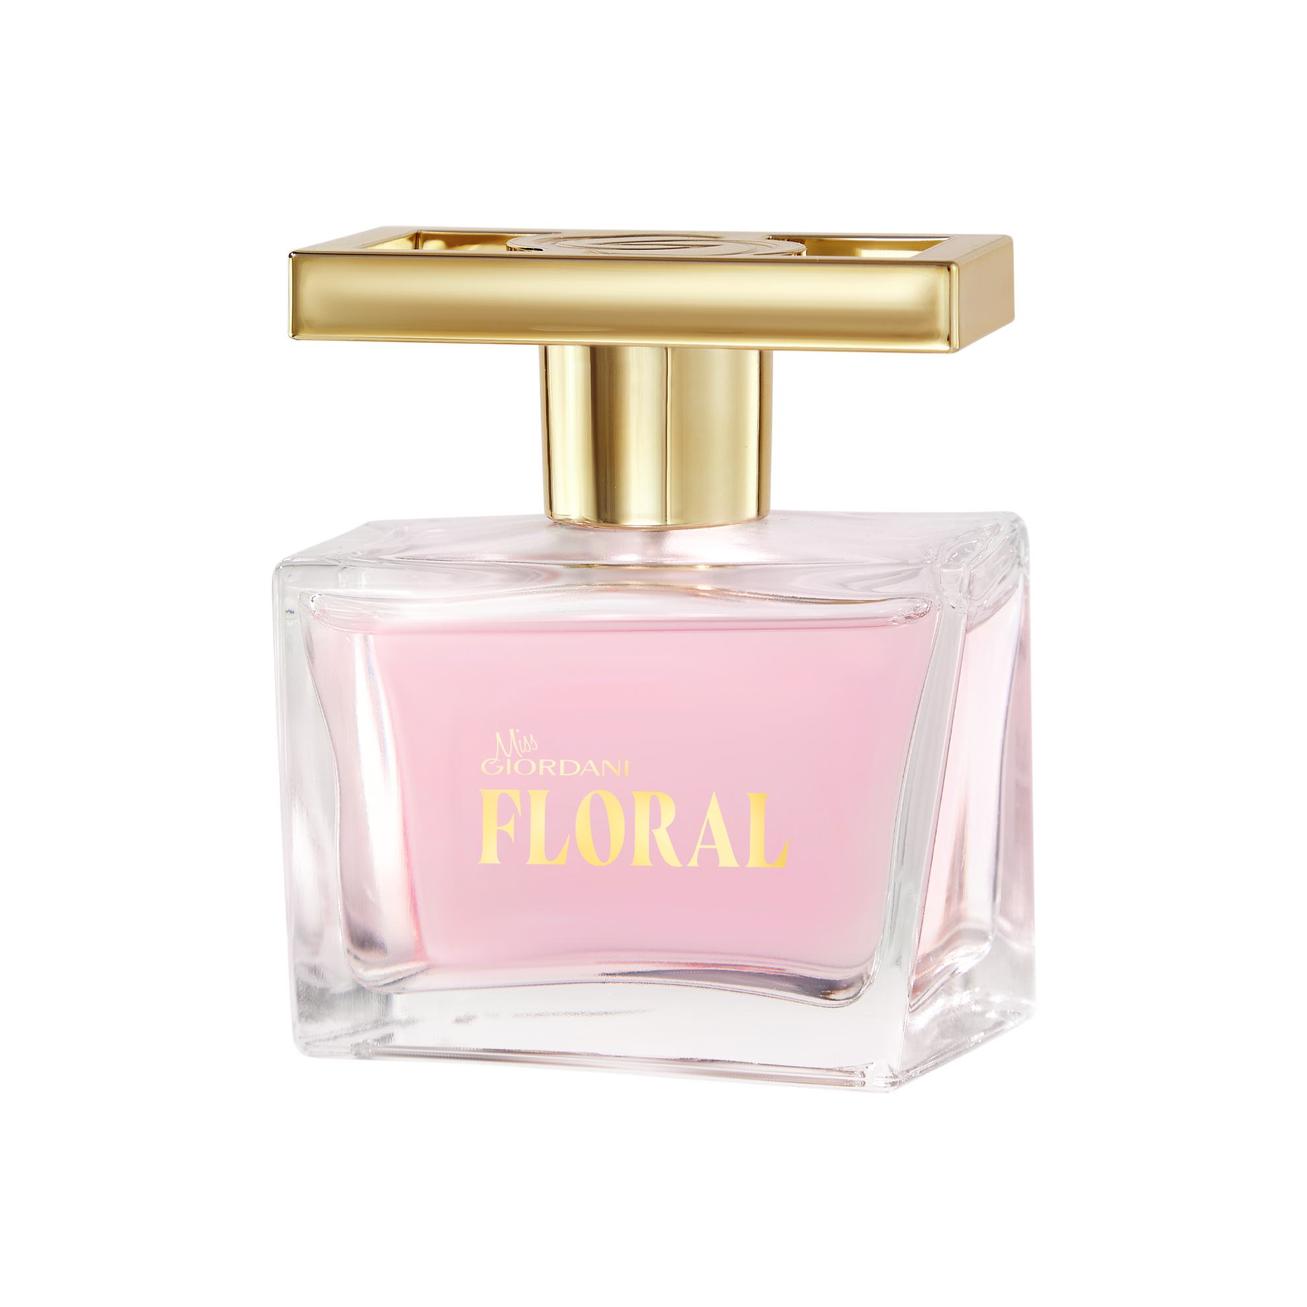 Oferta de Eau de Parfum Miss Giordani Floral por 44€ en Oriflame